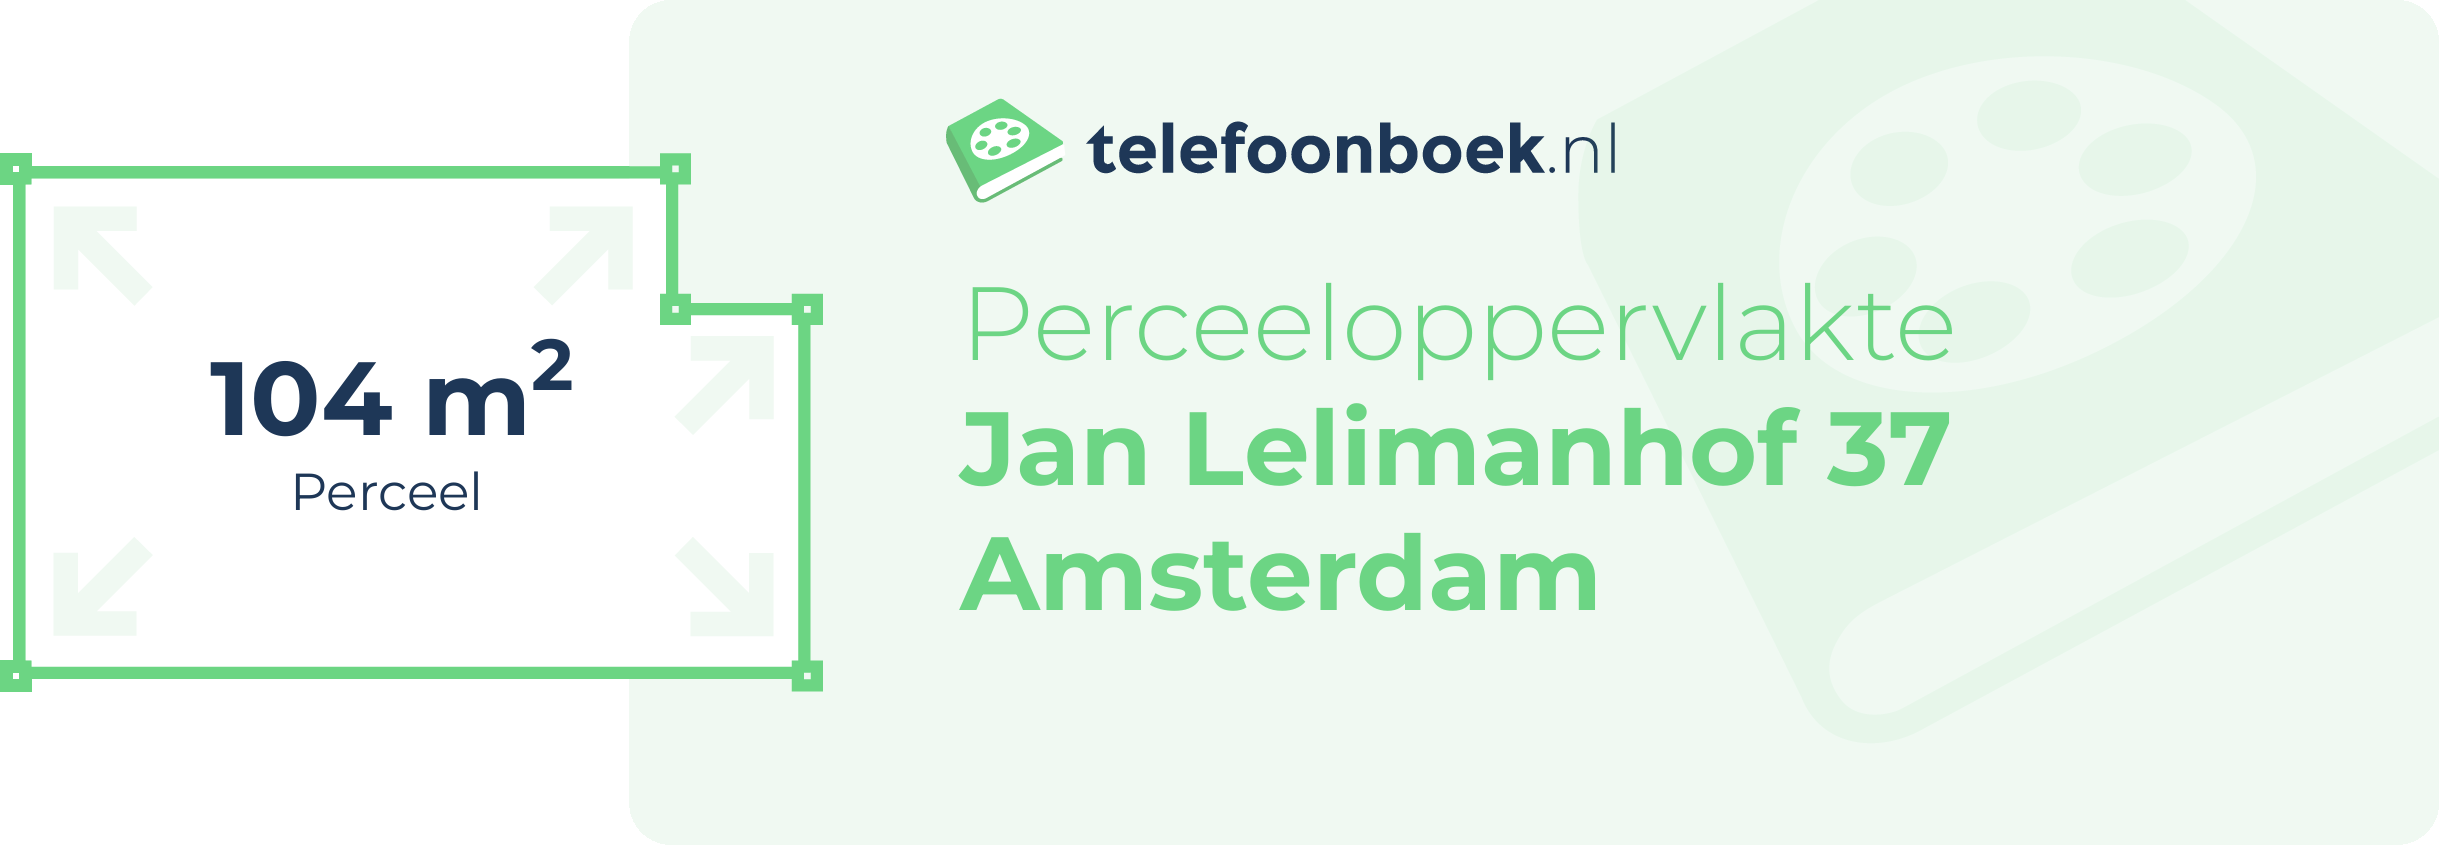 Perceeloppervlakte Jan Lelimanhof 37 Amsterdam